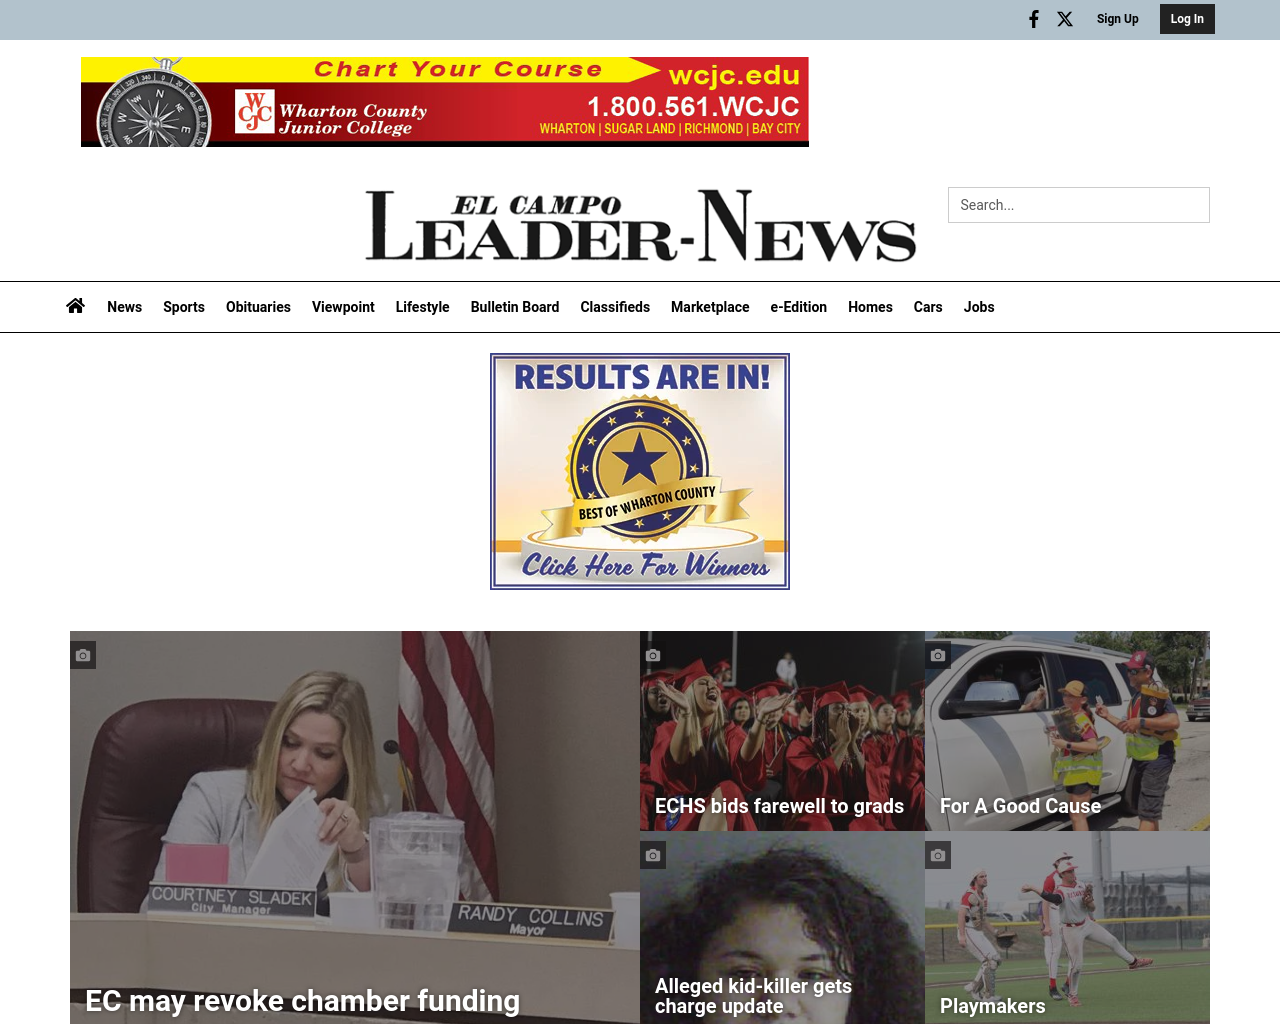 leader-news.com